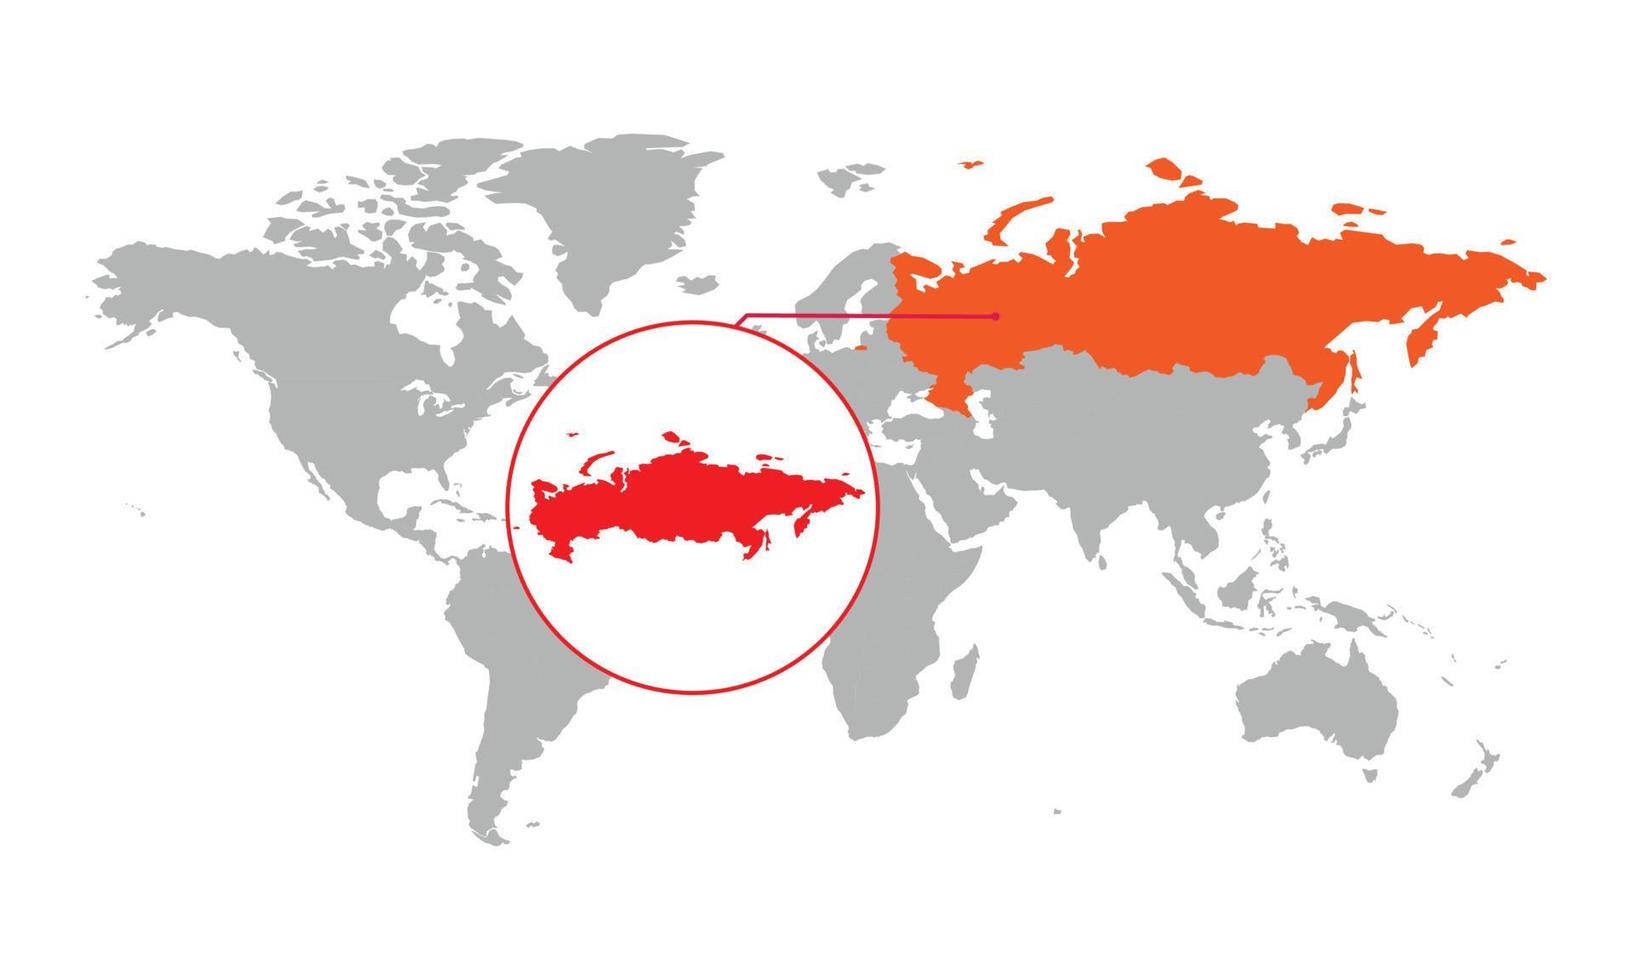 messa a fuoco della mappa della russia. mappa del mondo isolata. isolato su sfondo bianco. illustrazione vettoriale. vettore